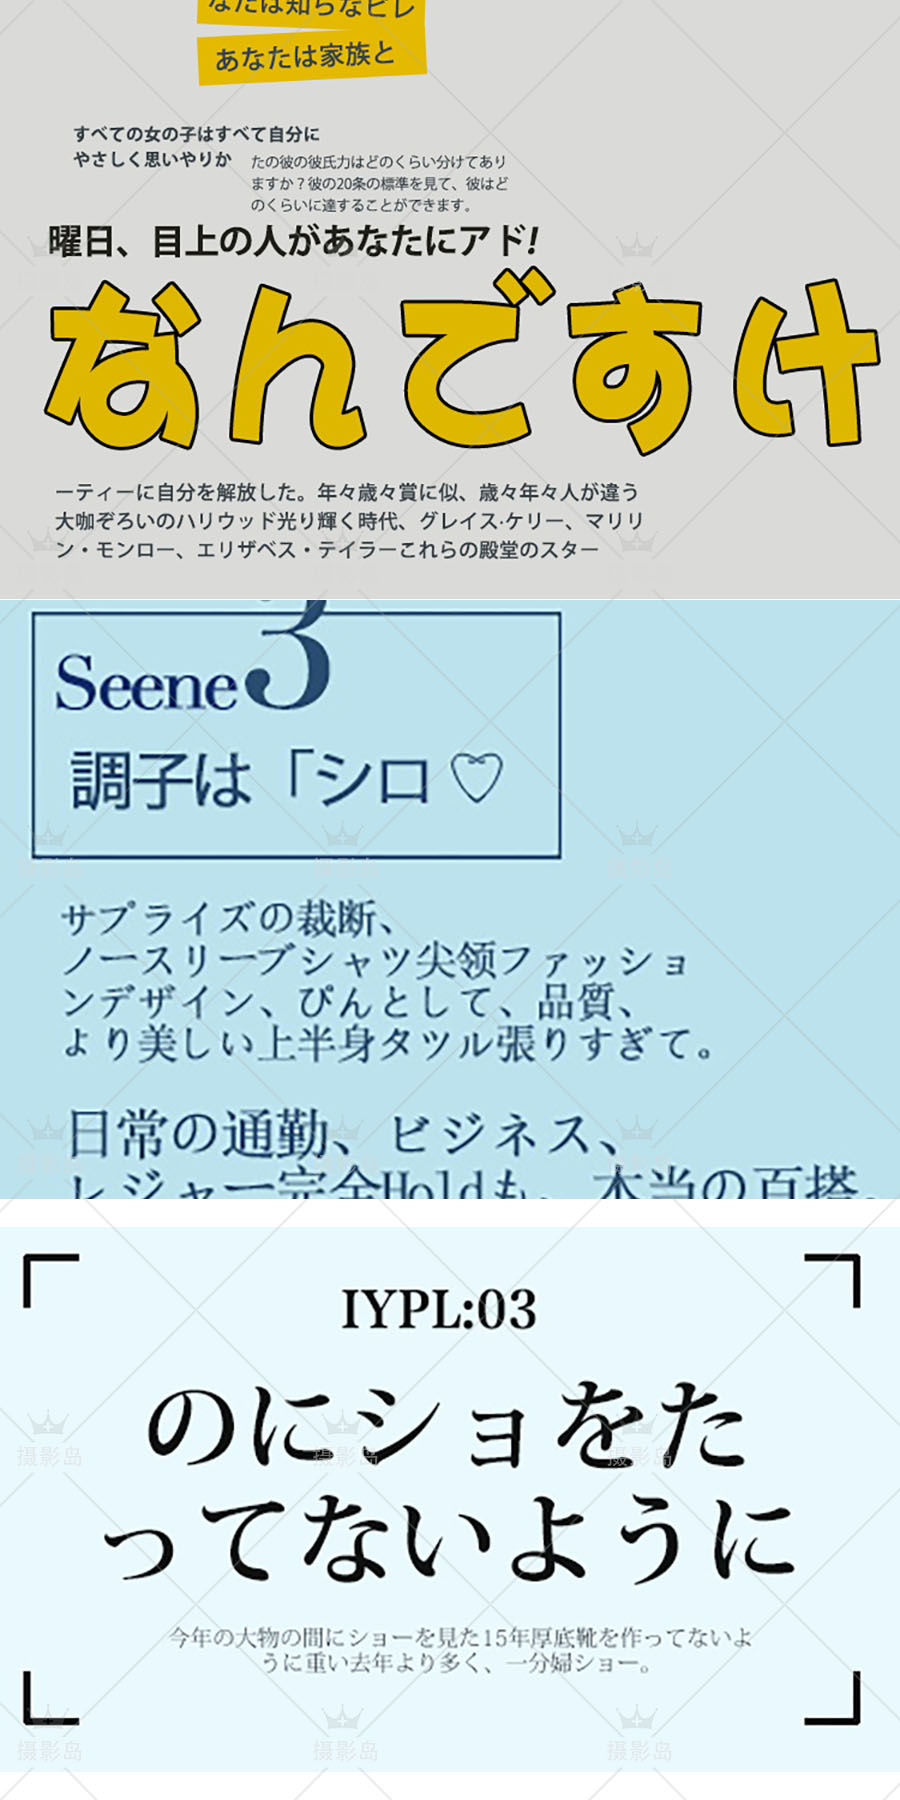 小清新风格文字psd字体模板，日系写真杂志封面后期排版素材